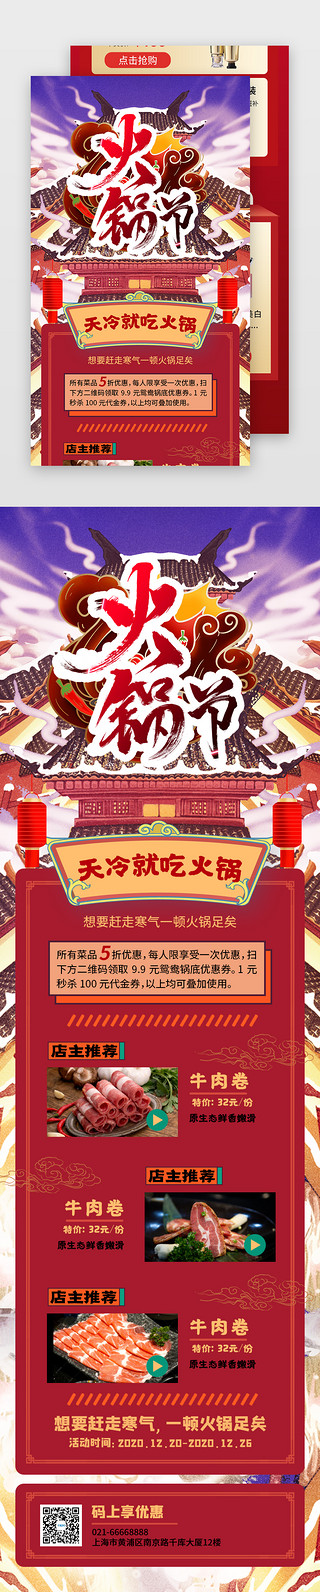 火锅节海报UI设计素材_大气中国风火锅节专题活动H5